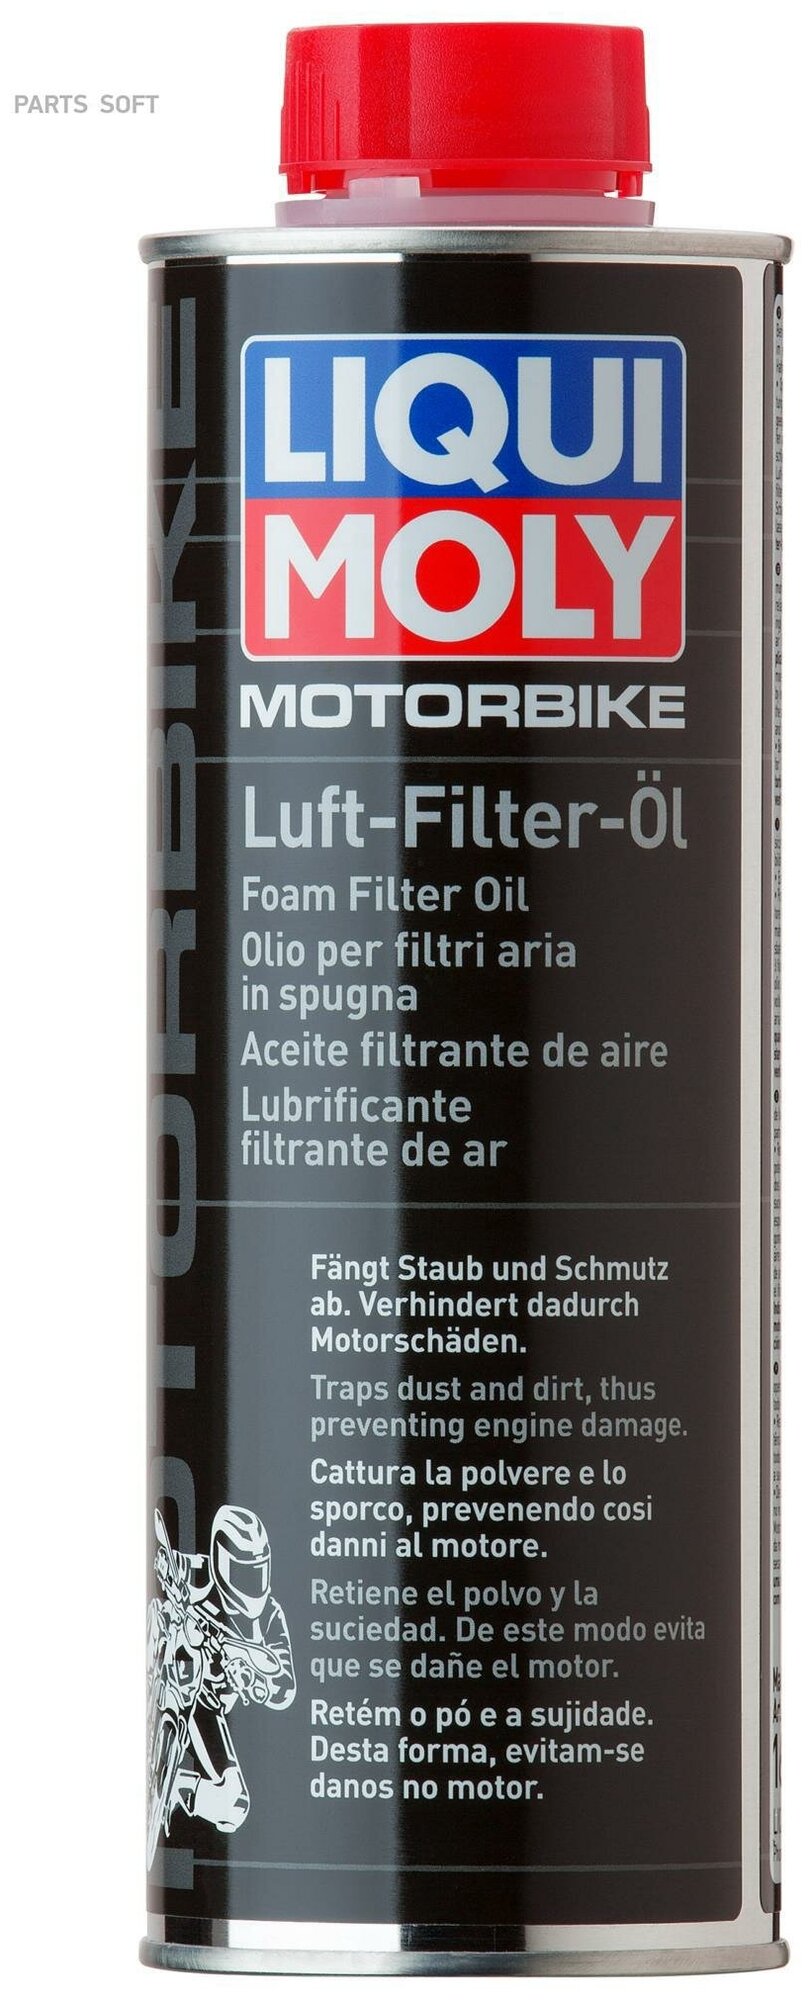 LIQUI MOLY 1625 Средство для пропитки фильтровMotorbike Luft-Filter-Oil (05л)